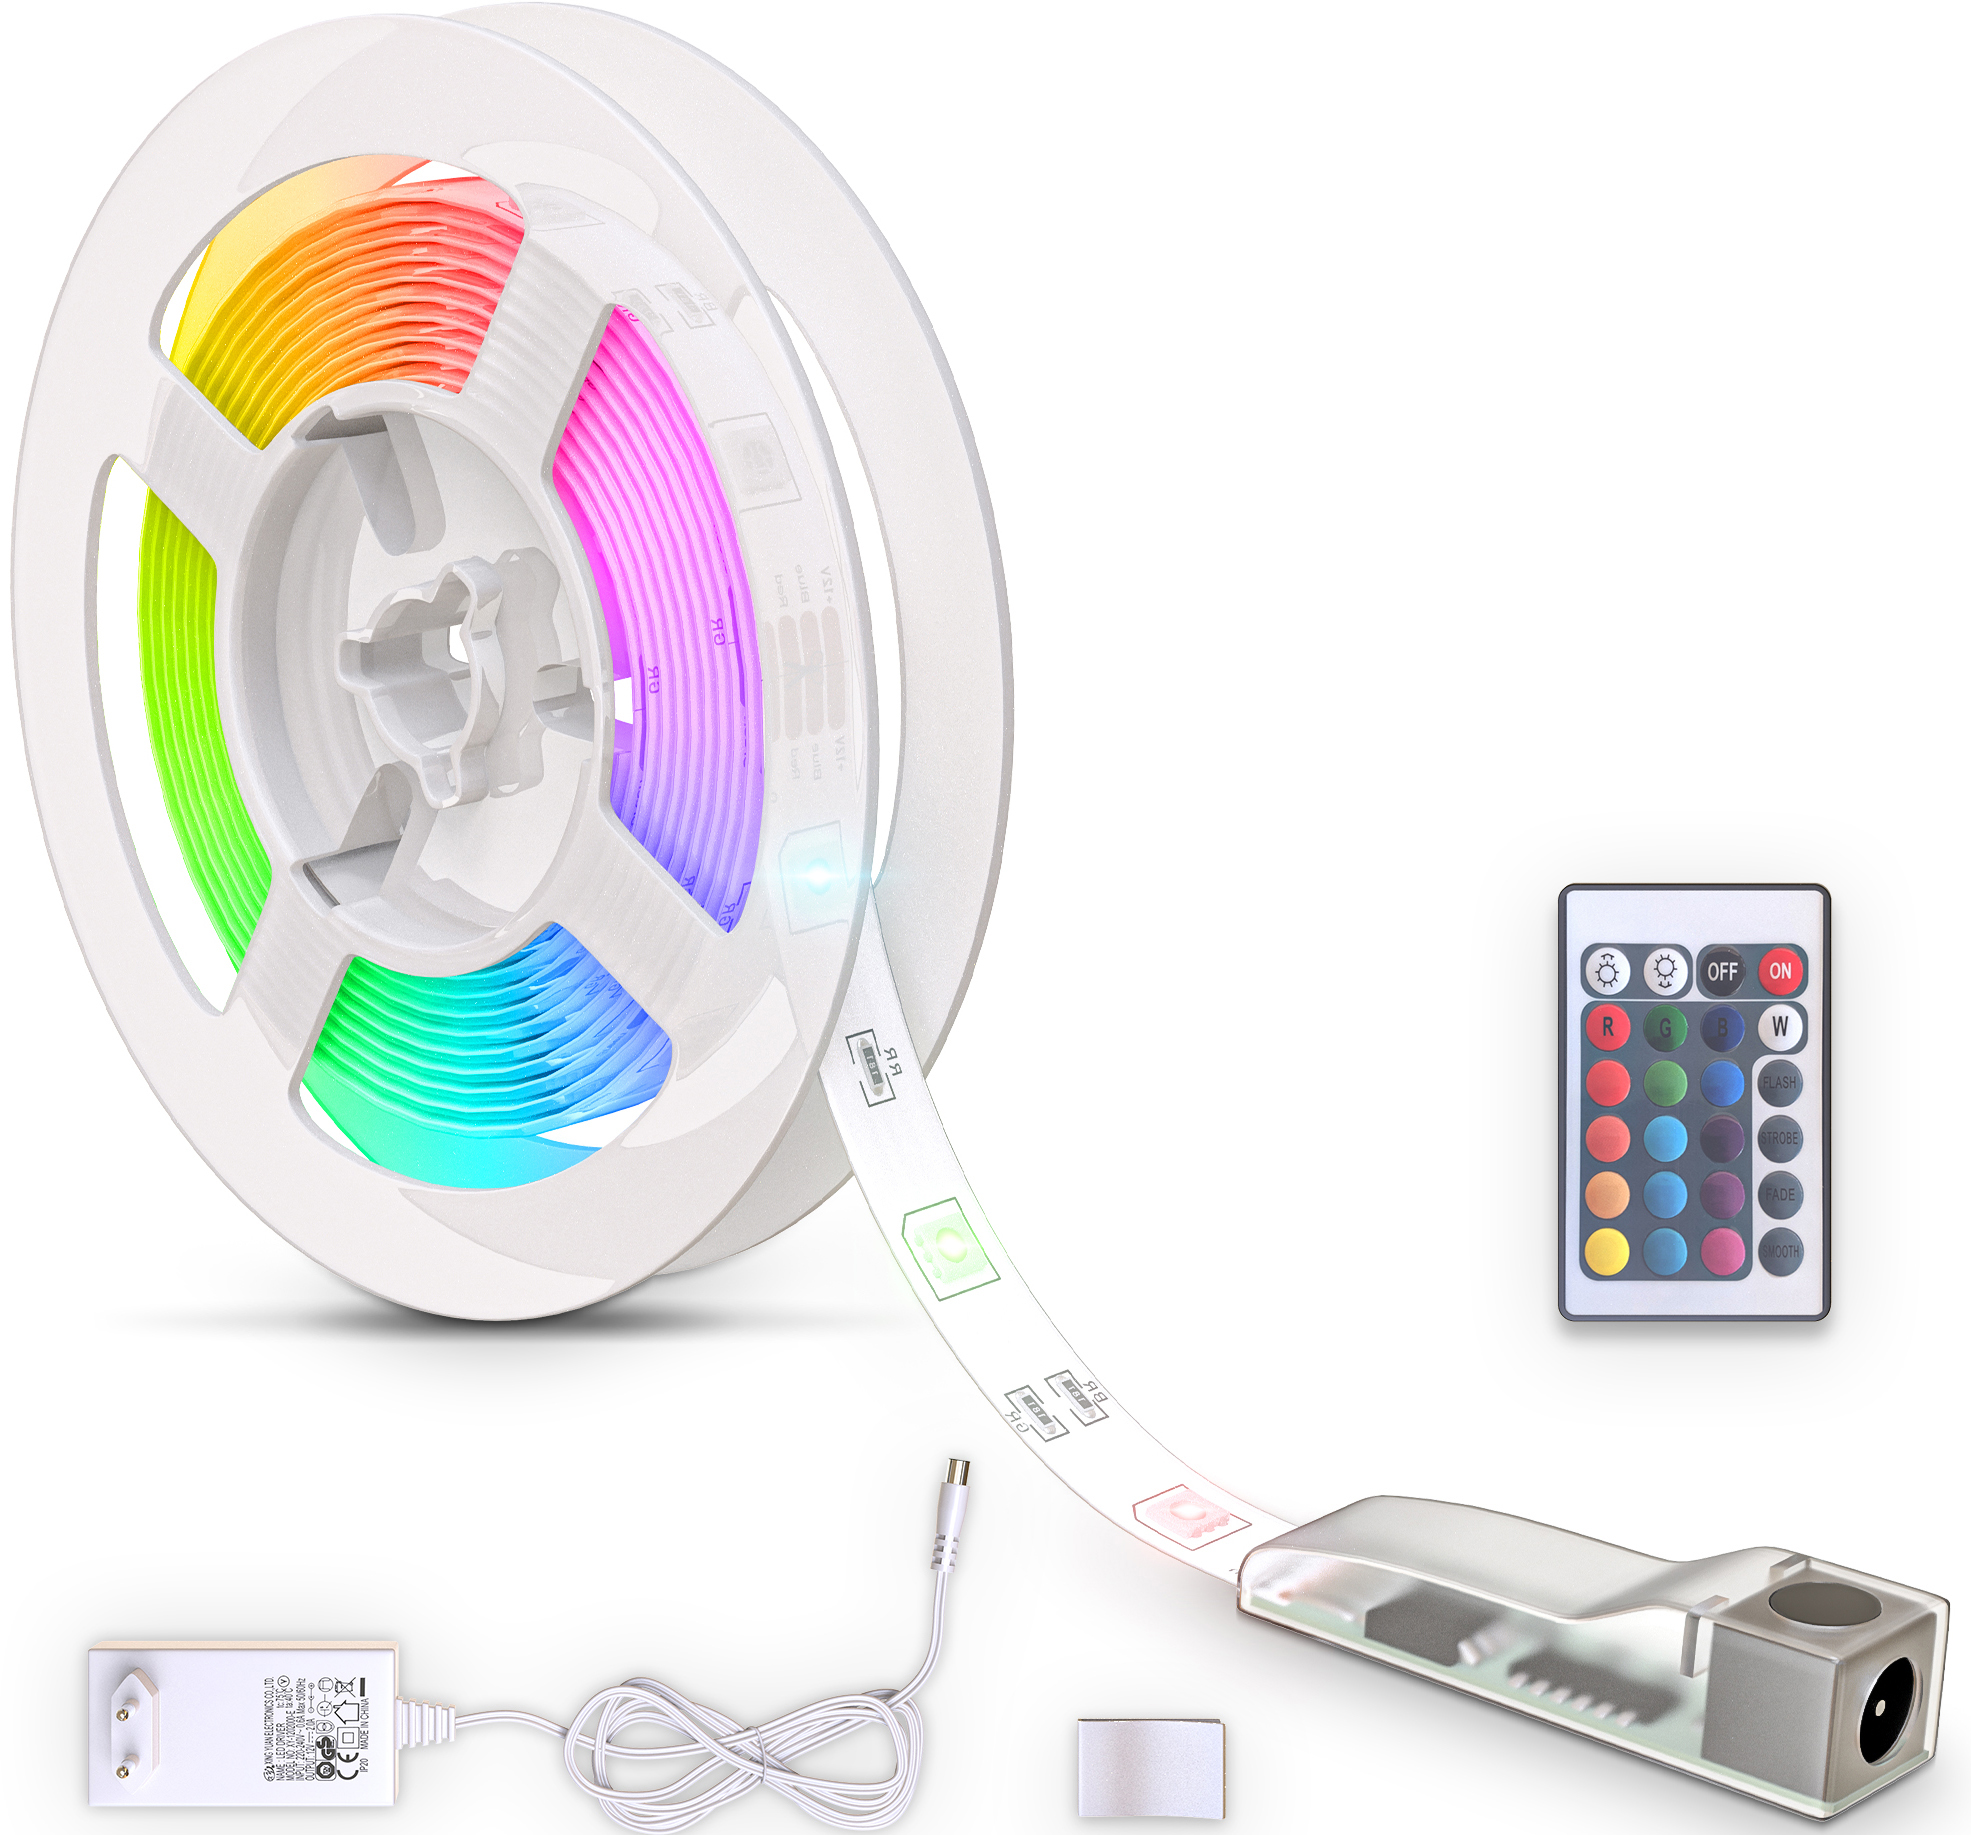 B.K.Licht LED-Streifen »USB LED Strip«, 90 St.-flammig, Lichtleiste, mit  Fernbedienung, selbstklebend auf Raten kaufen